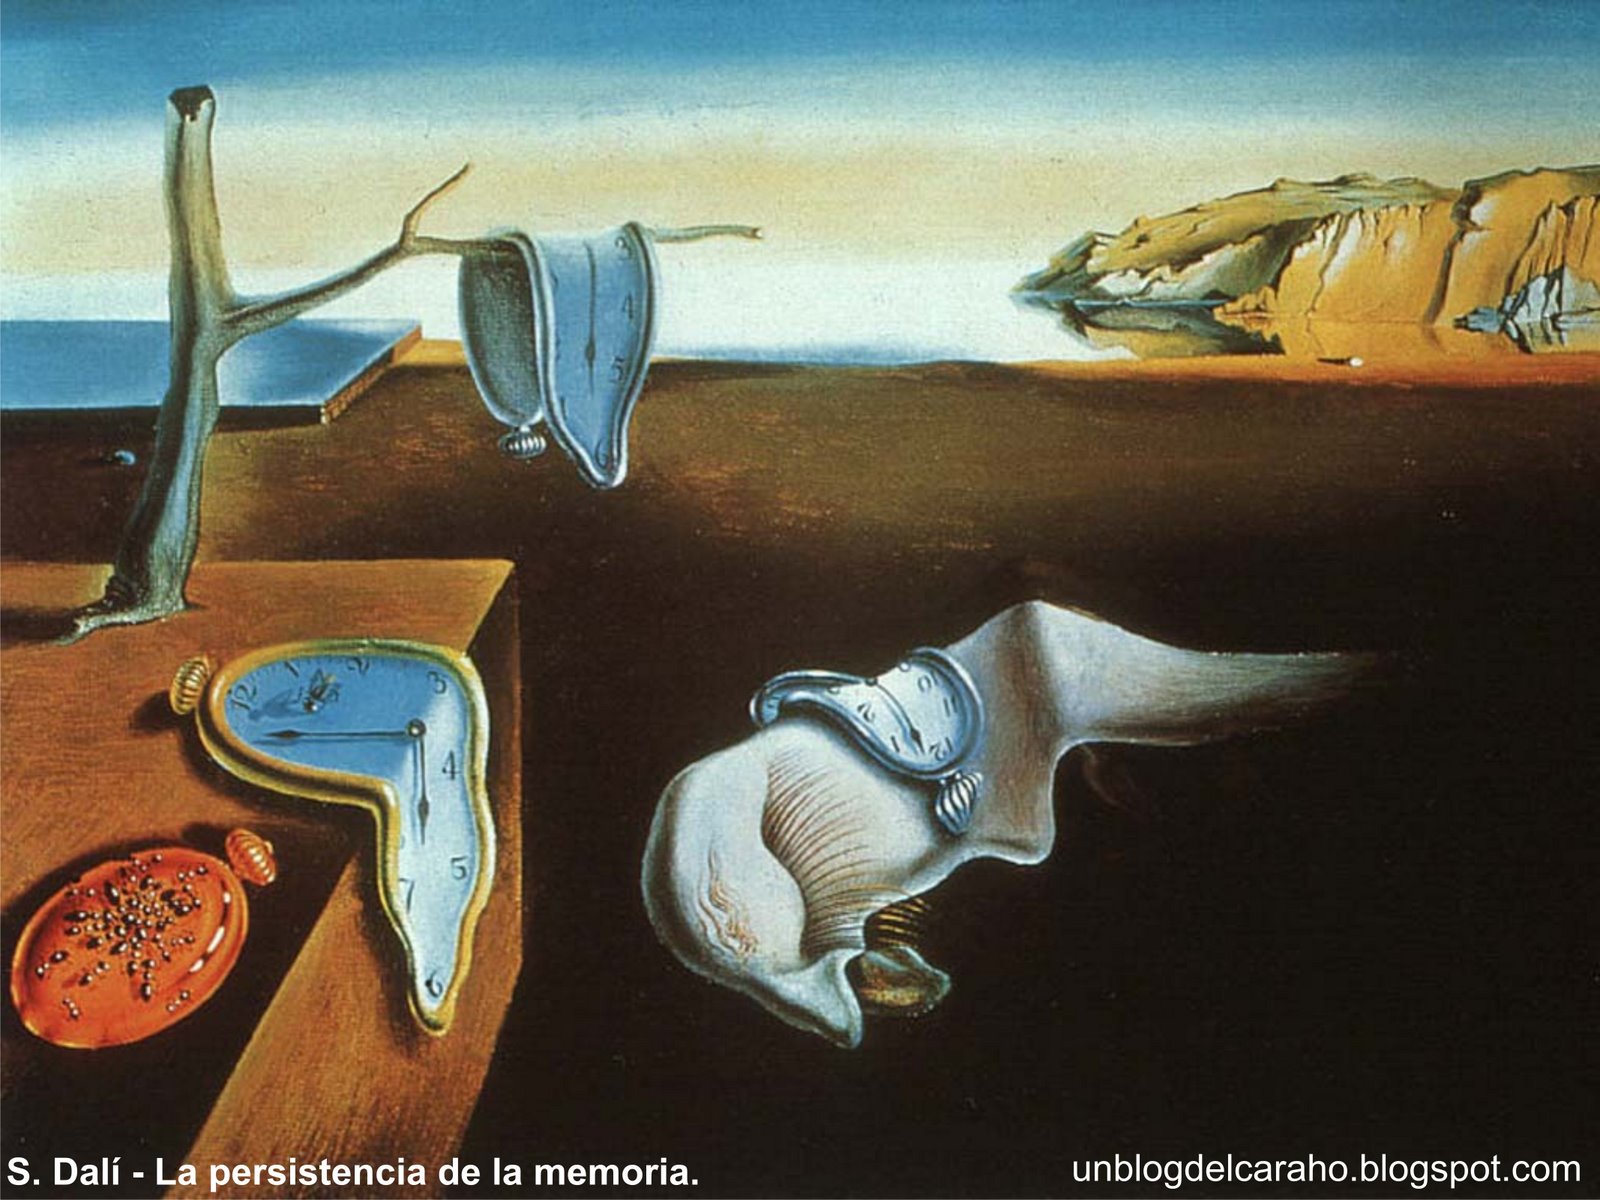 [S.+Dalí+-+La+persistencia+de+la+memoria+unblogdelcaraho.jpg]